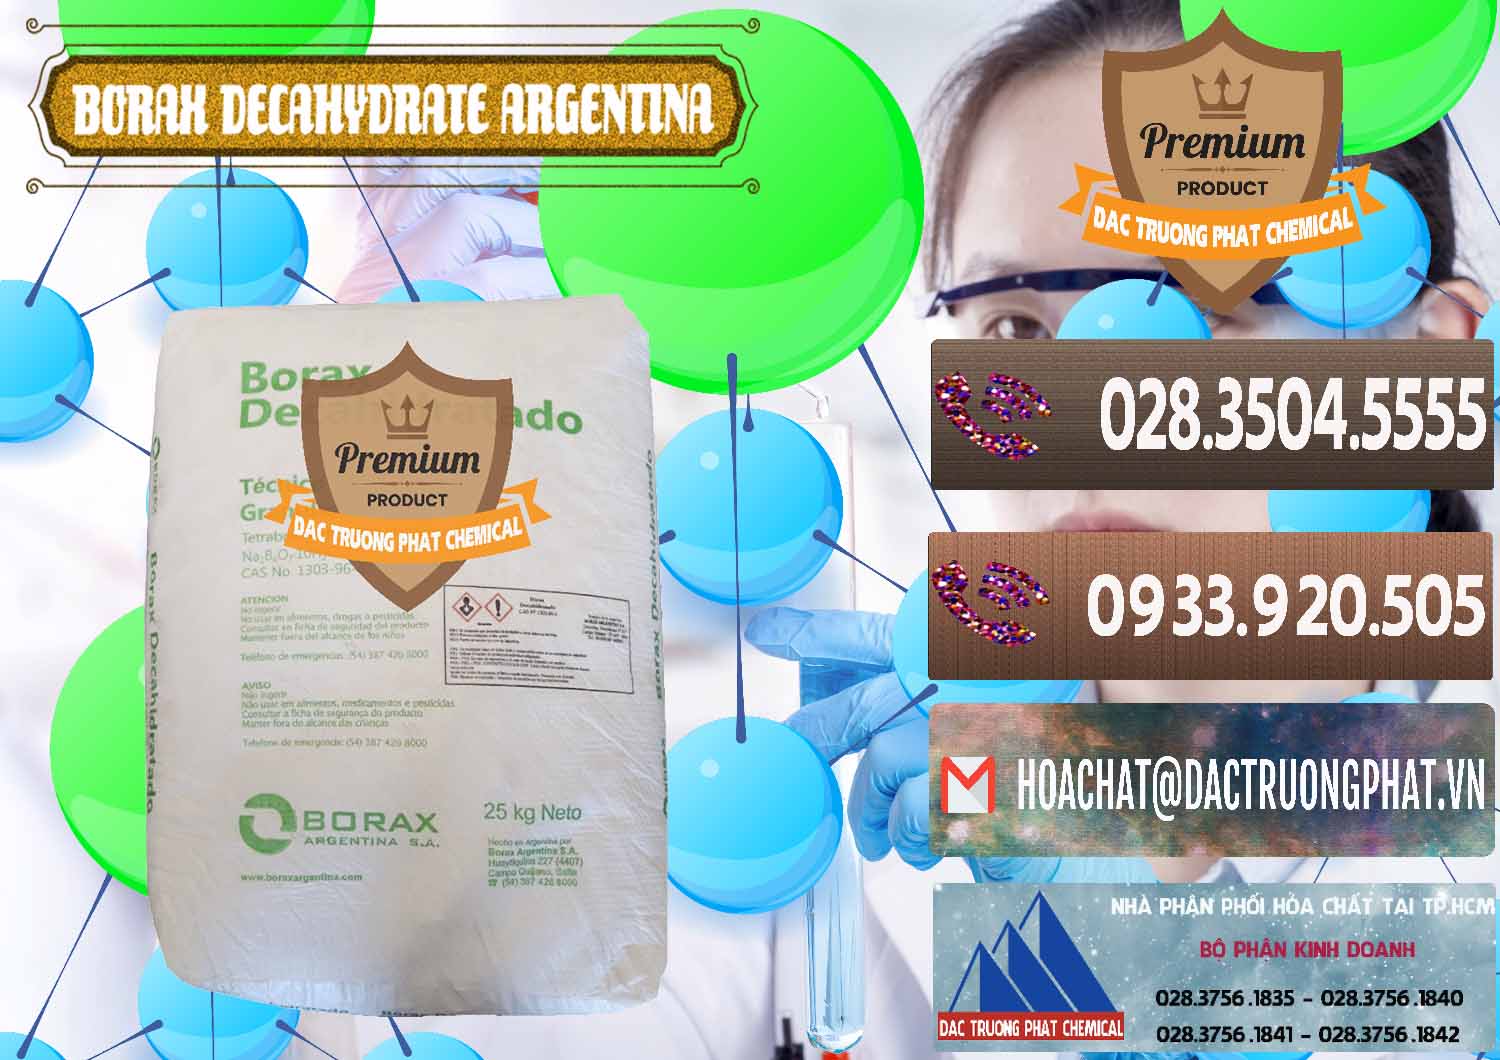 Nơi chuyên cung cấp & bán Borax Decahydrate Argentina - 0446 - Công ty chuyên cung cấp _ kinh doanh hóa chất tại TP.HCM - hoachatviet.net